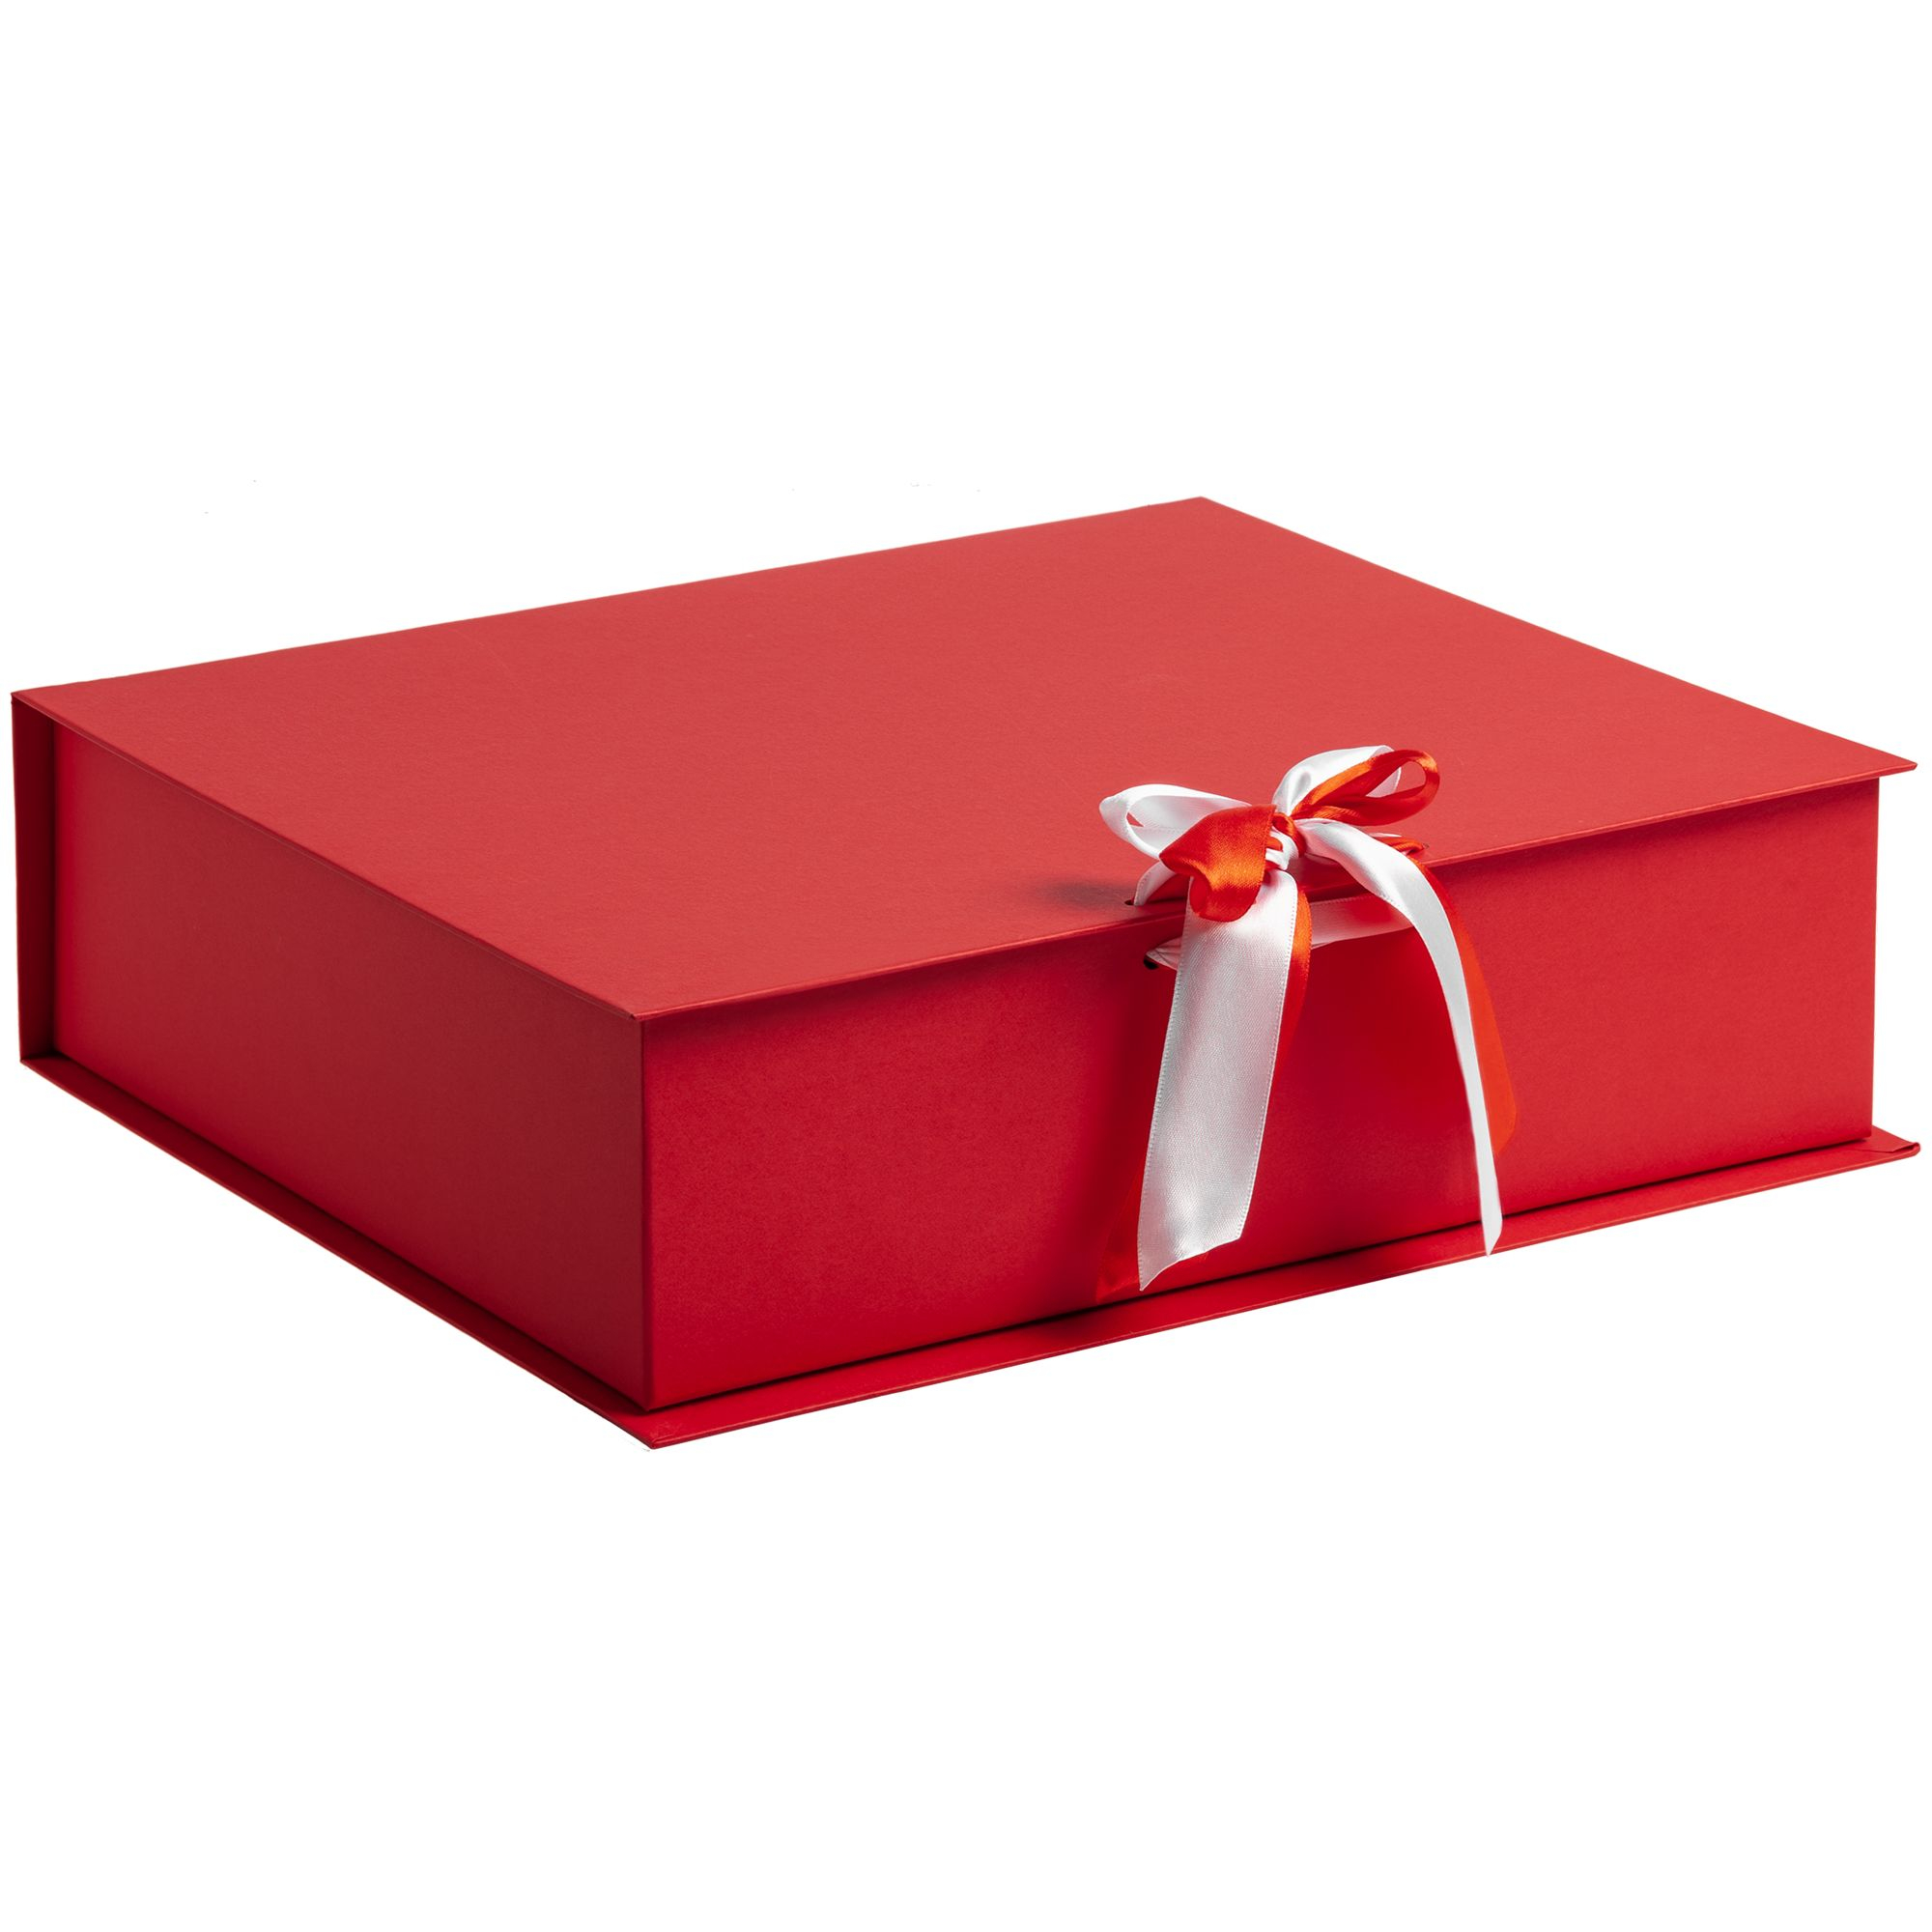 Большие красивые коробки. Подарочная коробка. Коробка для подарка. Красивая подарочная коробка. Красивые коробочки для подарков.